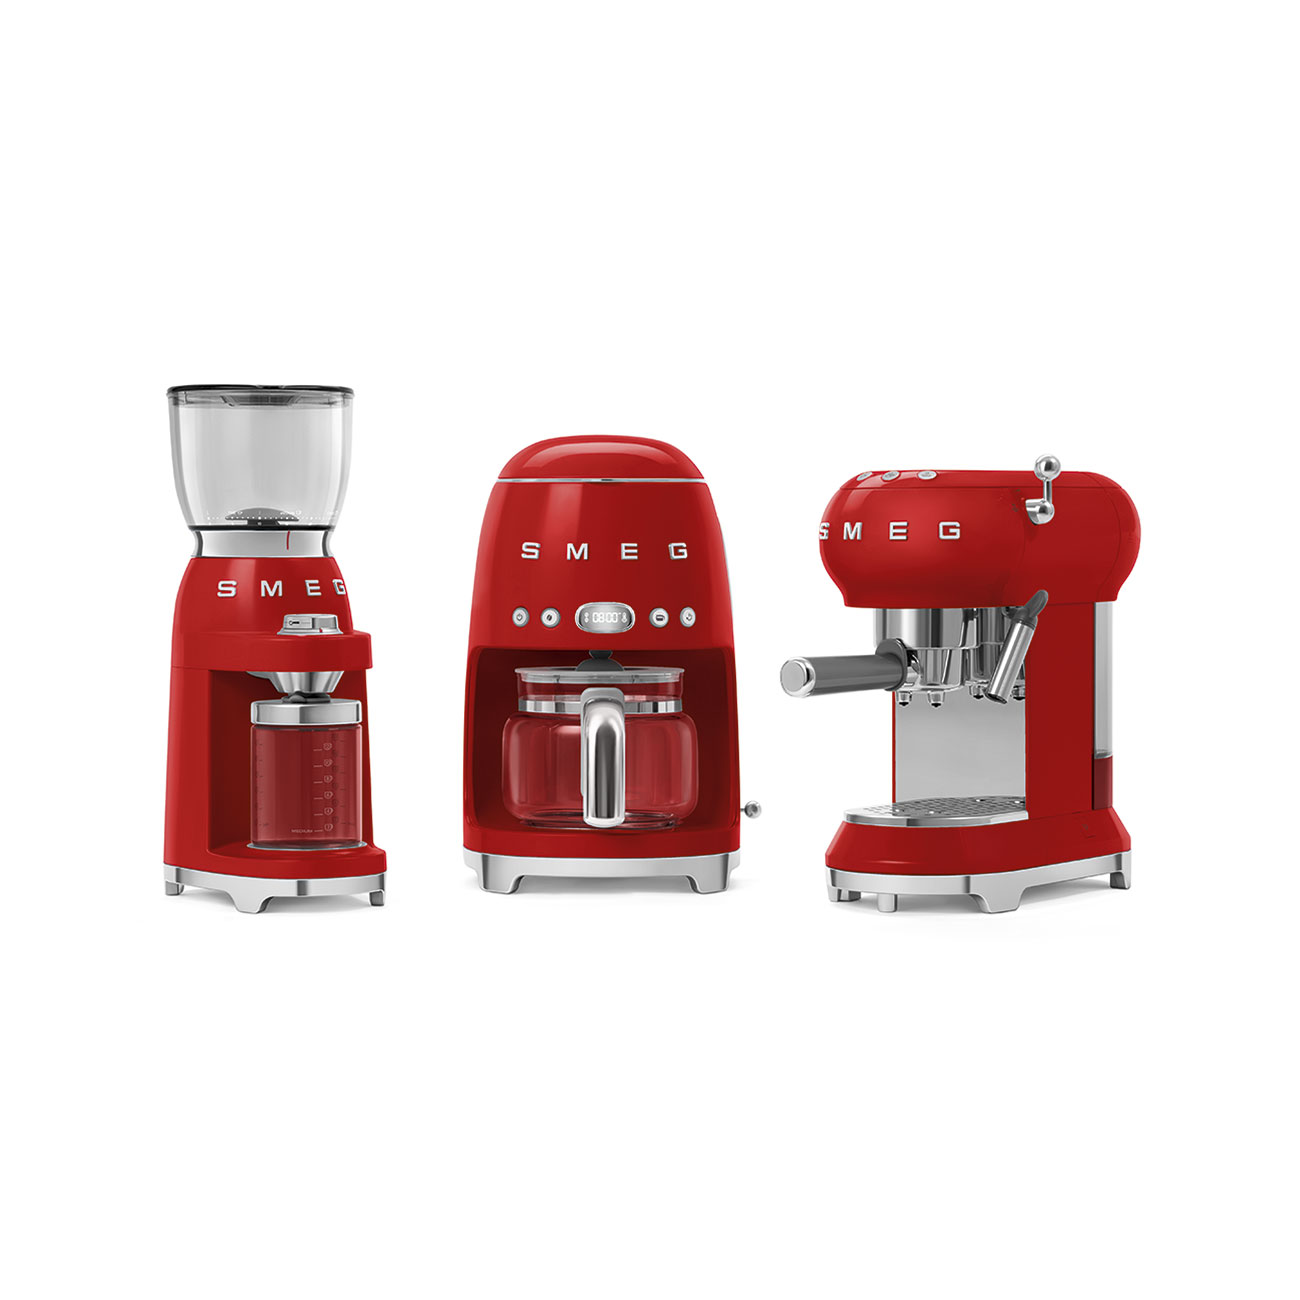 Smeg Red Espresso Manual Coffee Machine_6